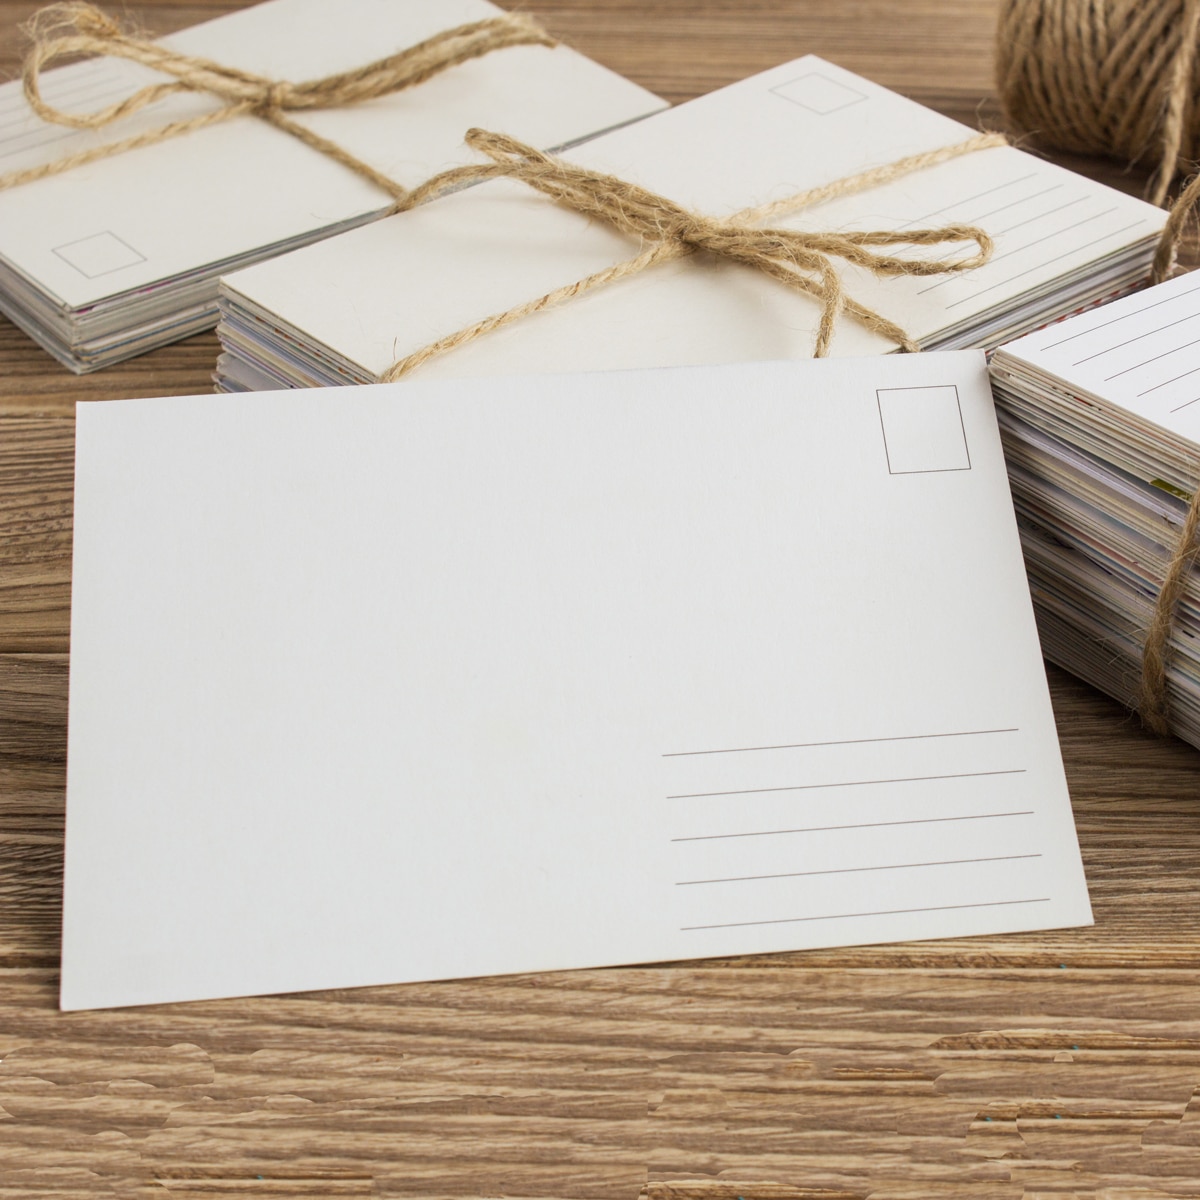 Les cartes postales  Jeu de mariage 100 % personnalisable – Réussir son  mariage